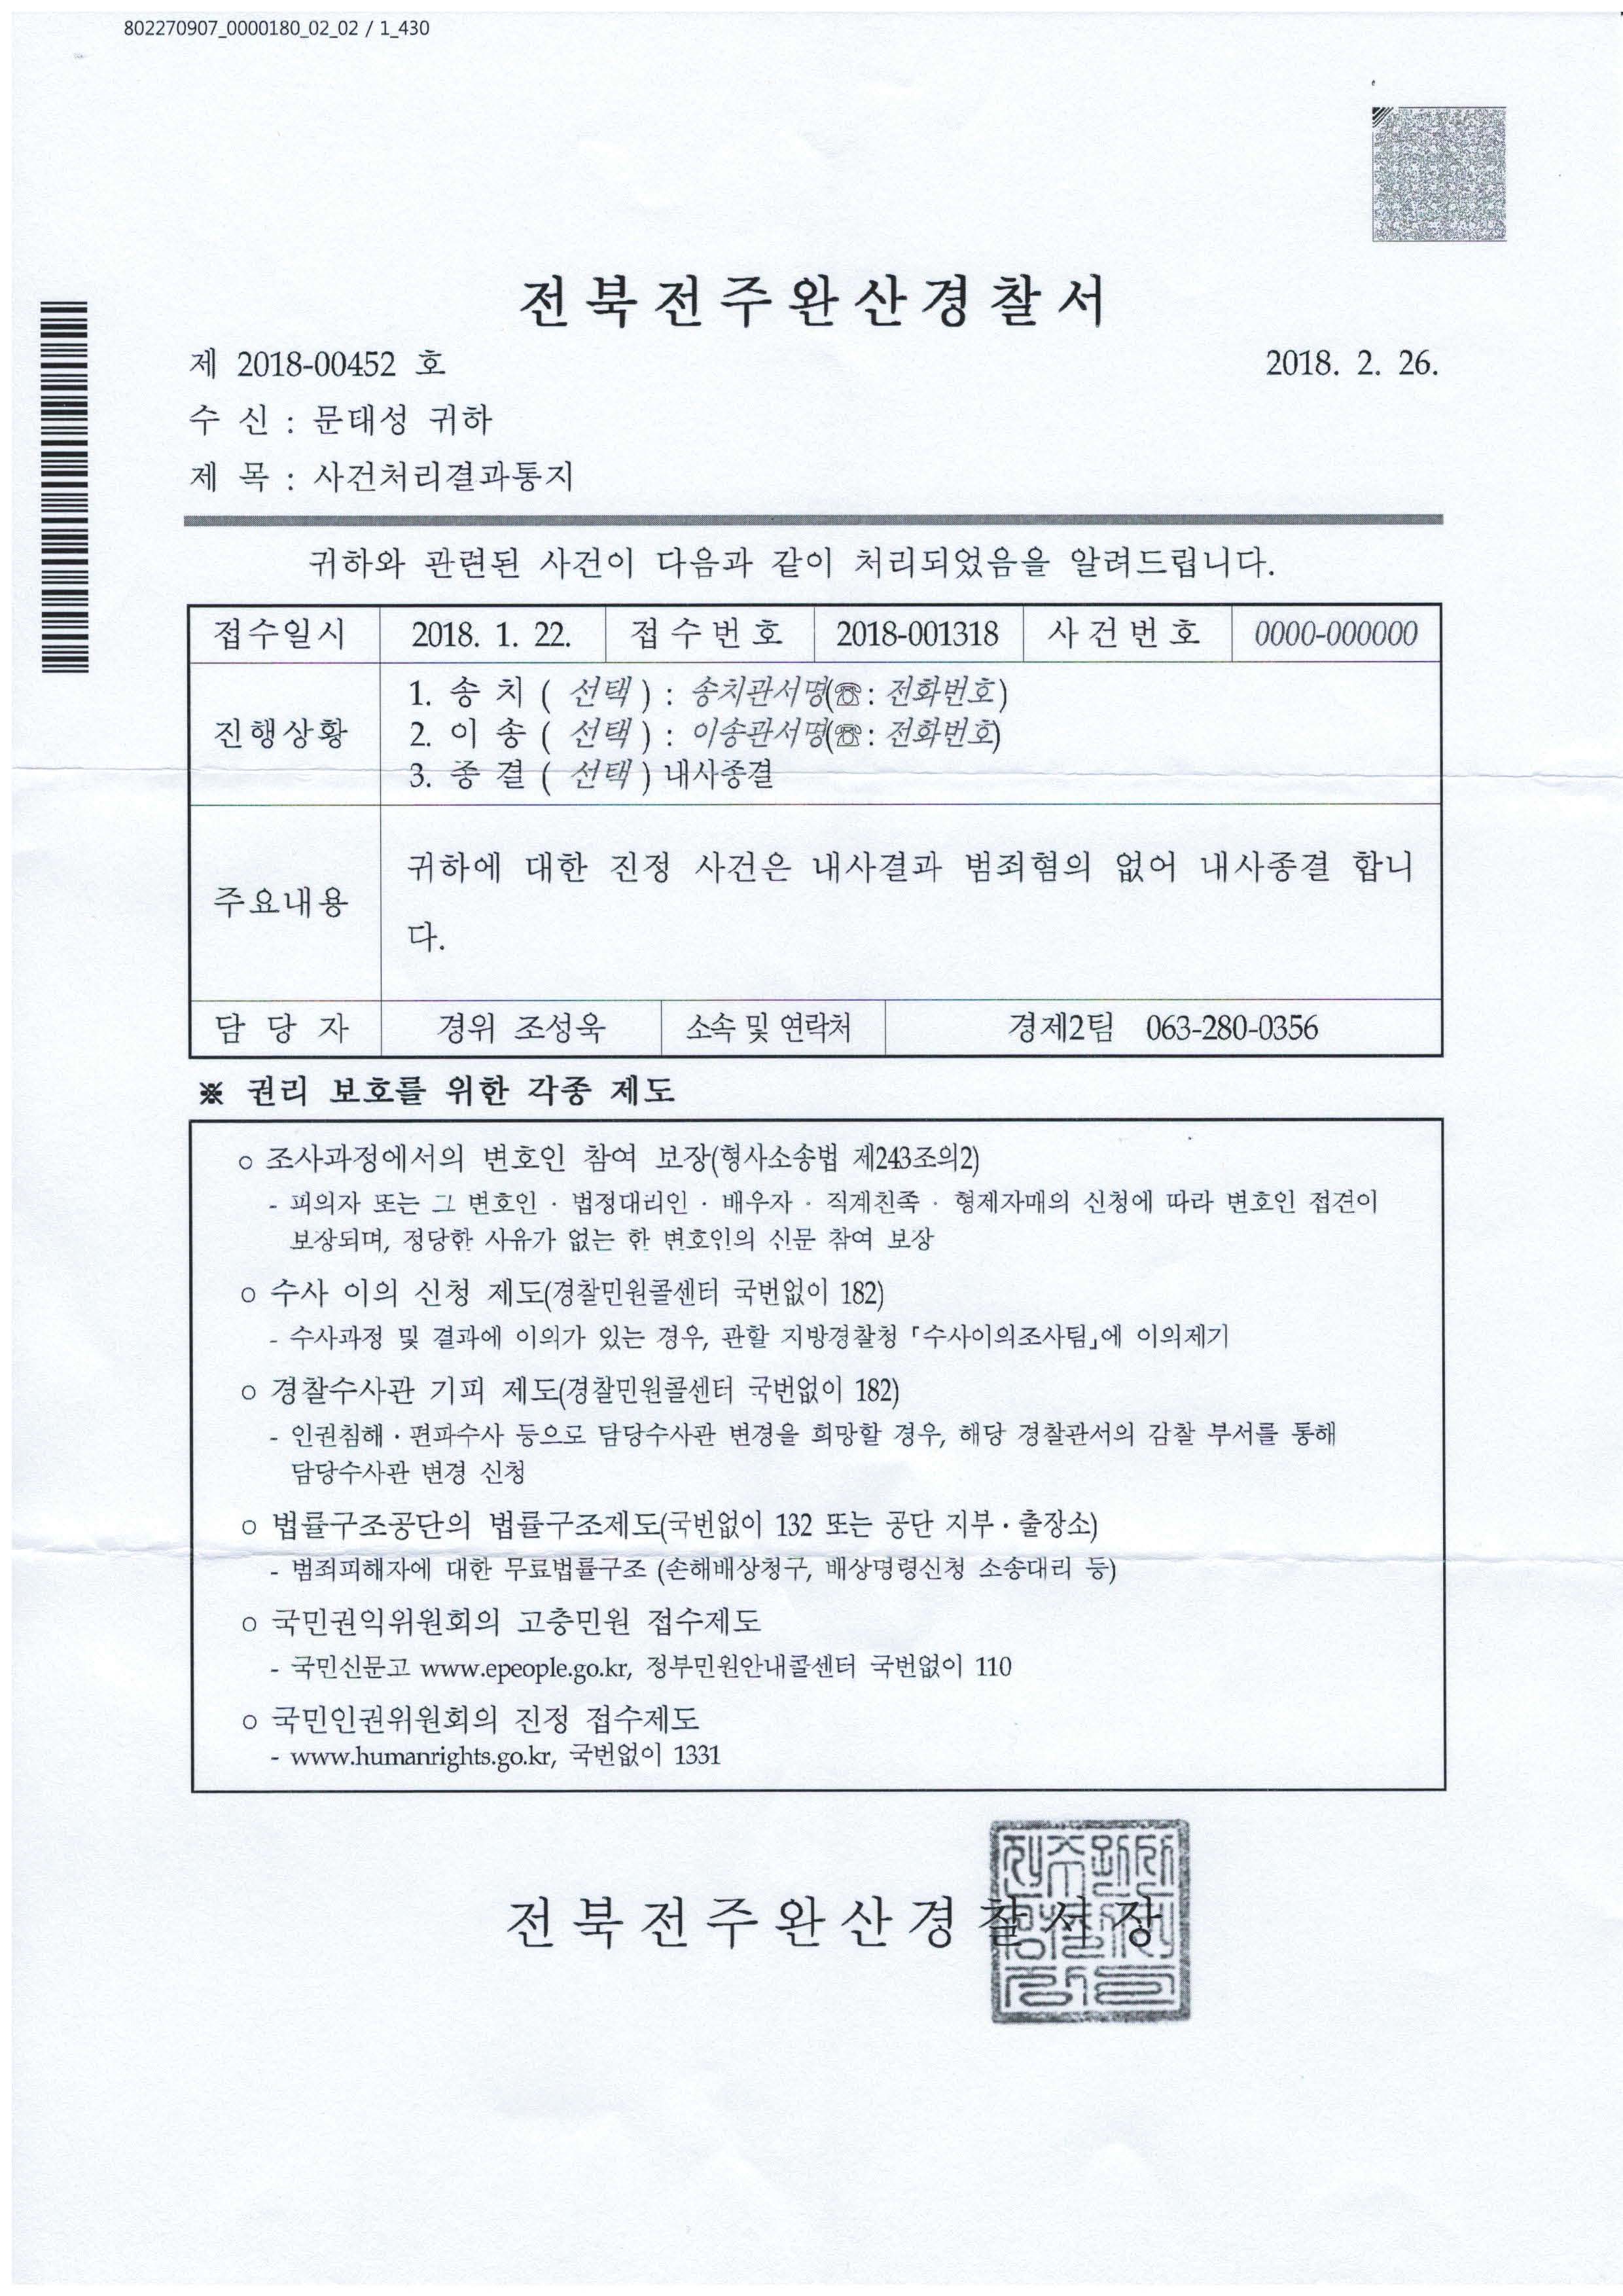 18.1.22_기부금품법위반 내사종결(전주완산경찰서) 사건처리결과통지서.jpg